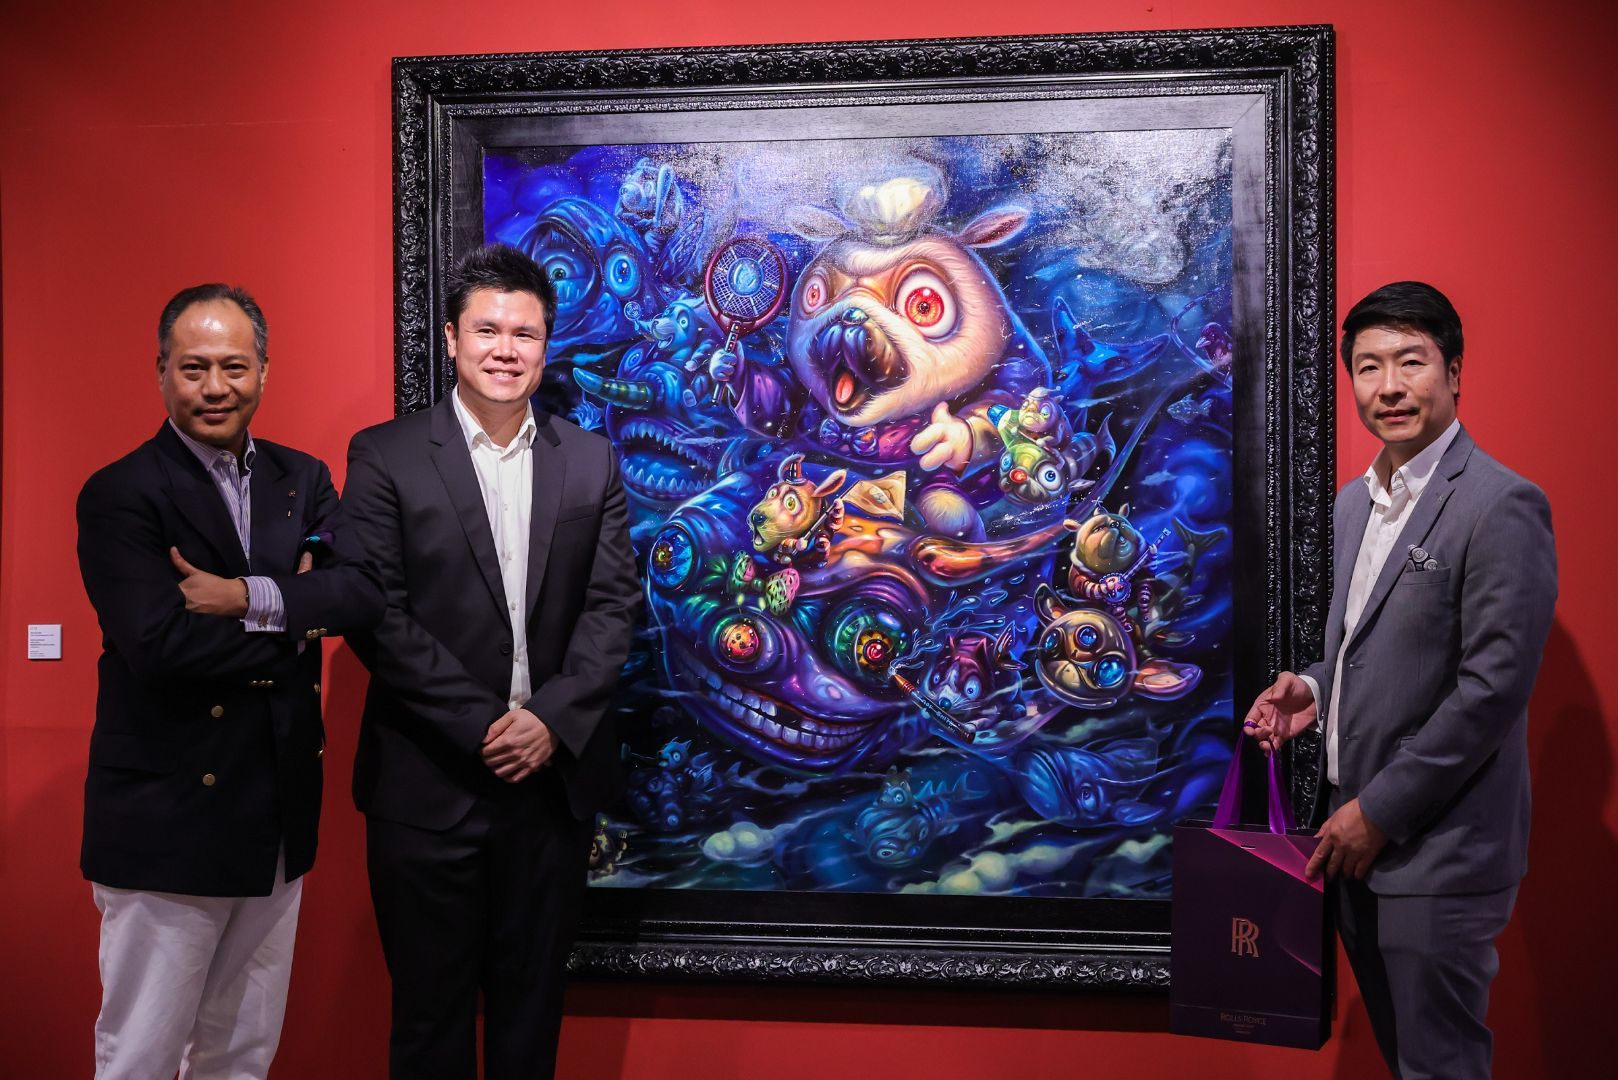 โรลส์-รอยซ์ มอเตอร์ คาร์ส แบงคอก มอบประสบการณ์สุดพิเศษ ชวนเสพงานศิลป์ ผลงานศิลปินระดับแถวหน้าเมืองไทย